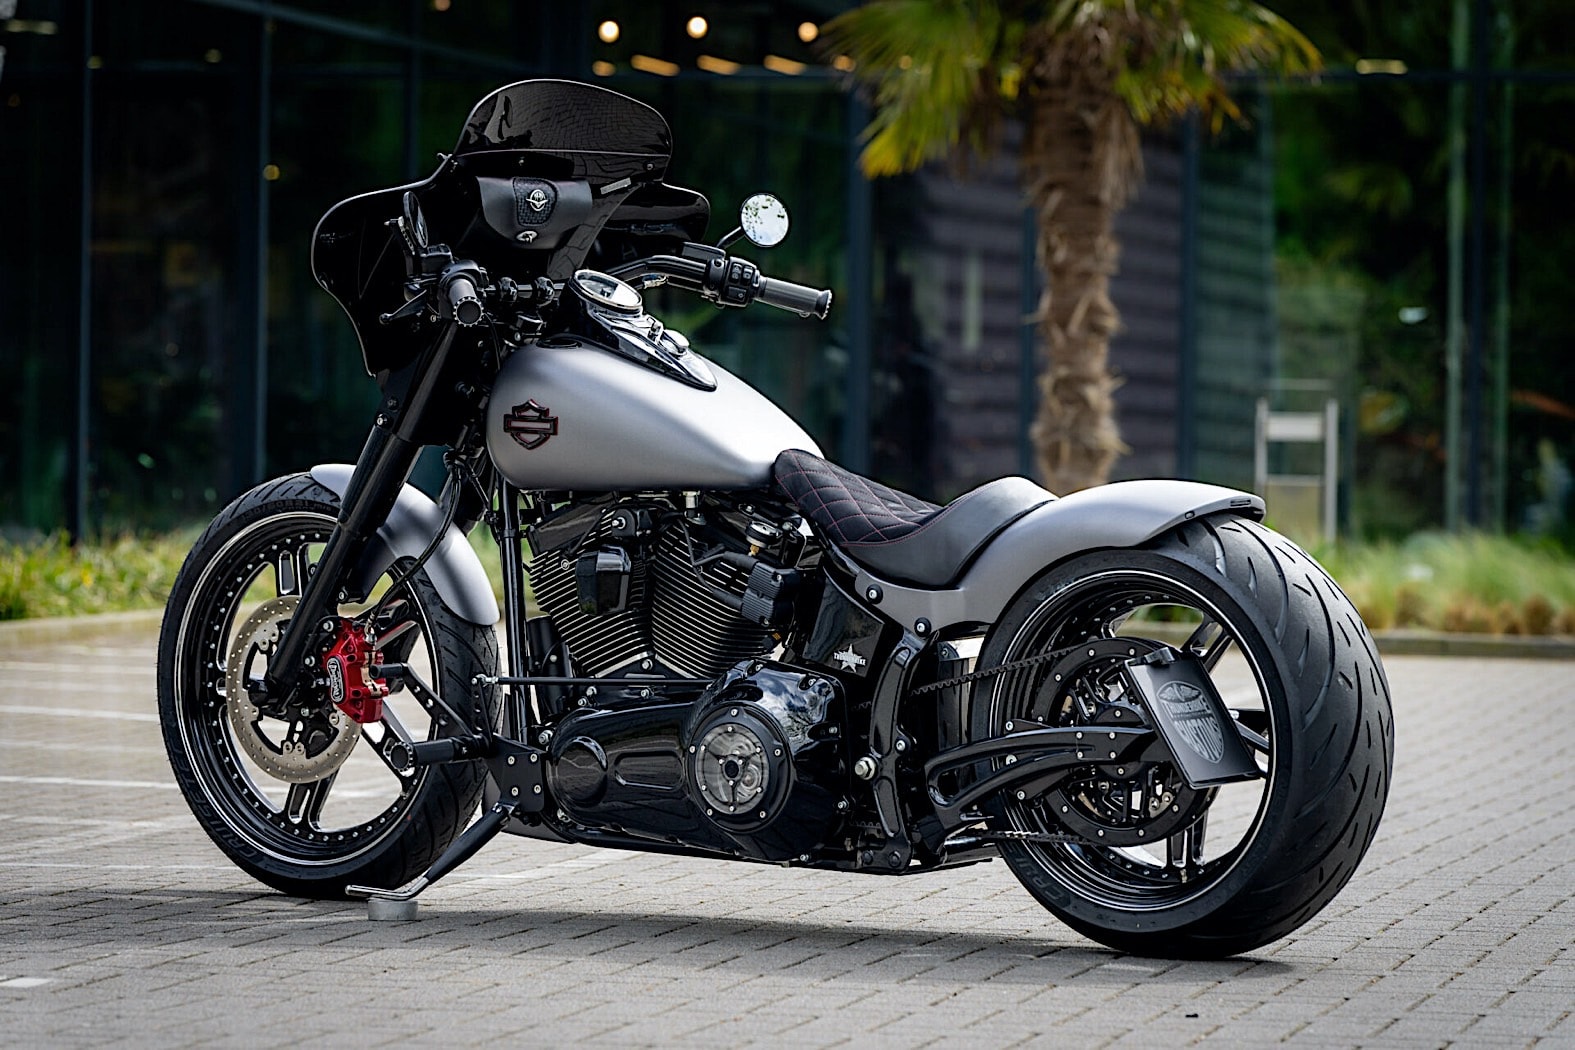 Harley-Davidson's Softail